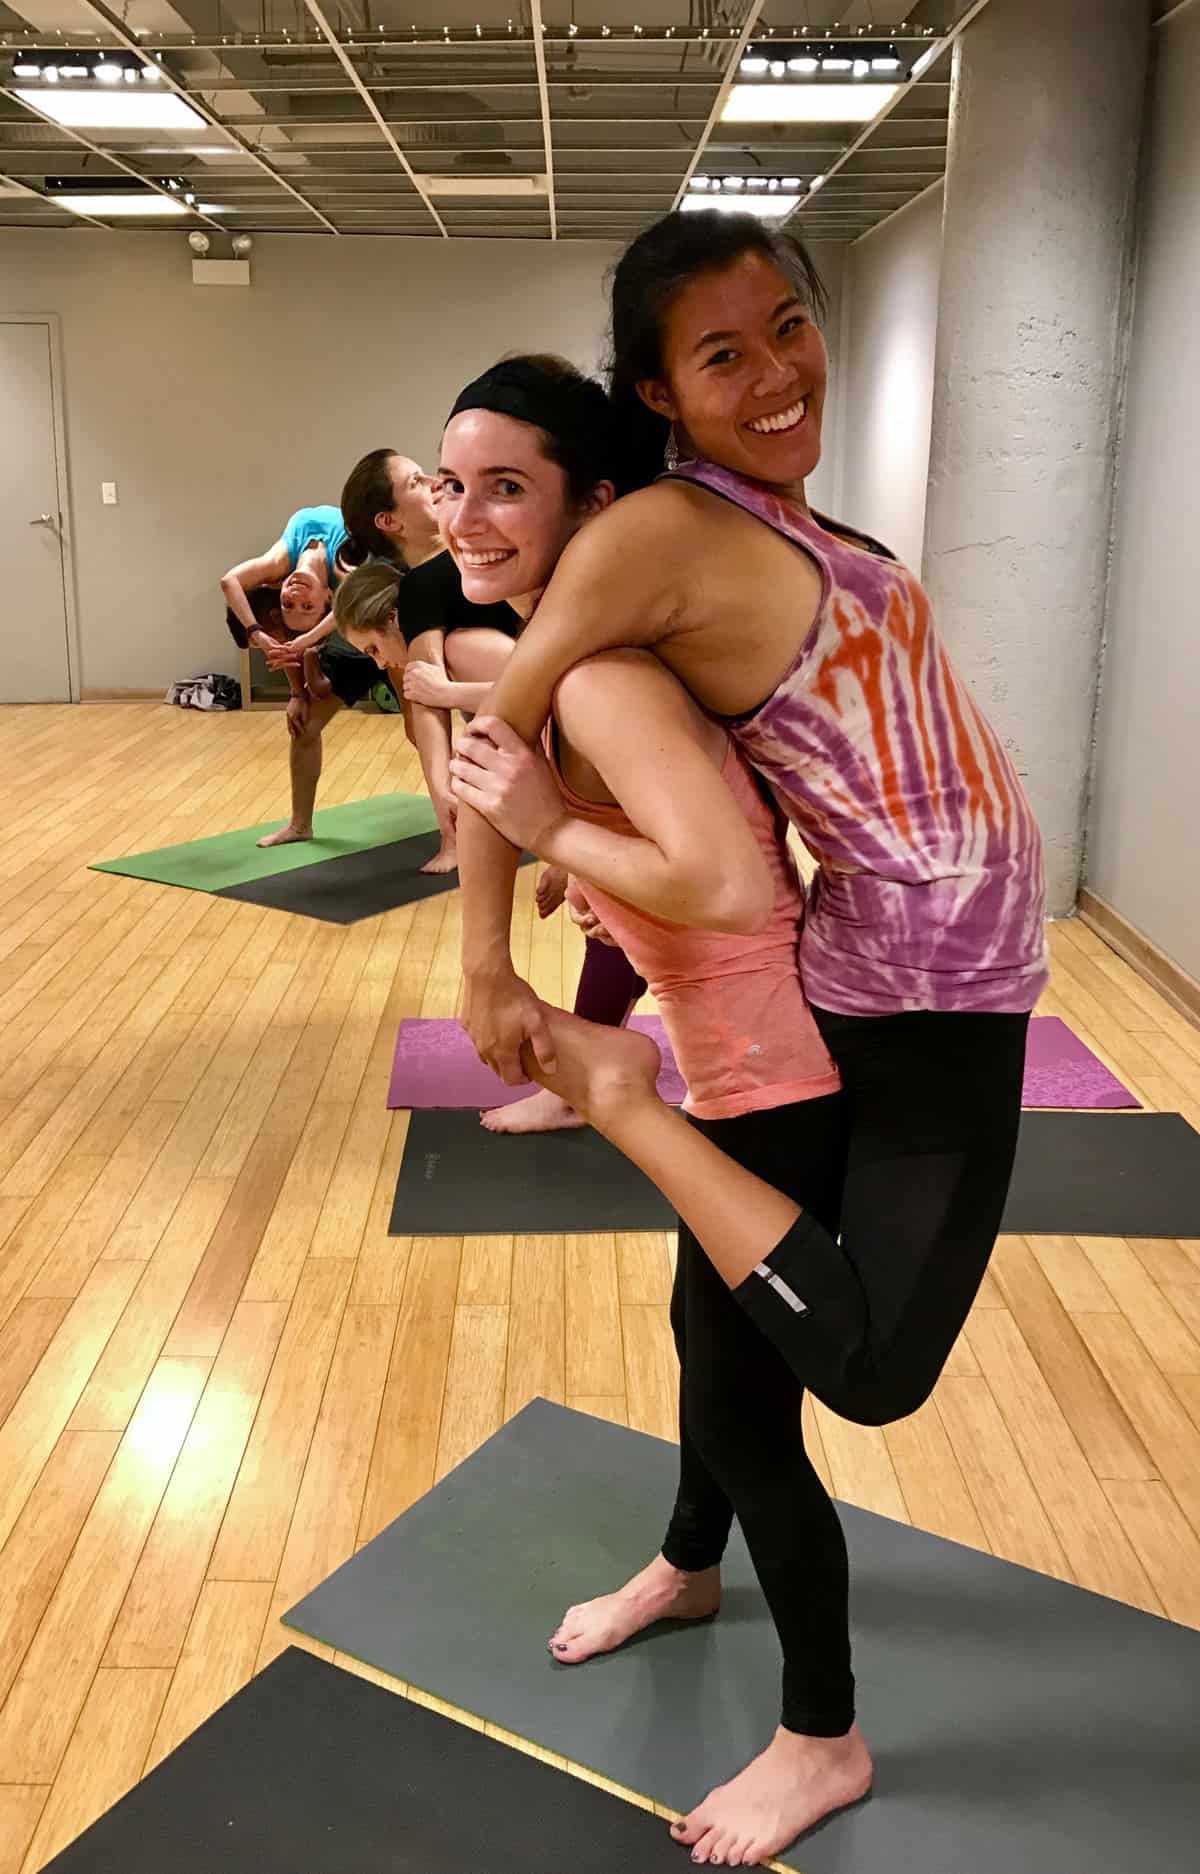 4 Person Yoga poses. 4 Person yoga poses | by Yogatips | Medium